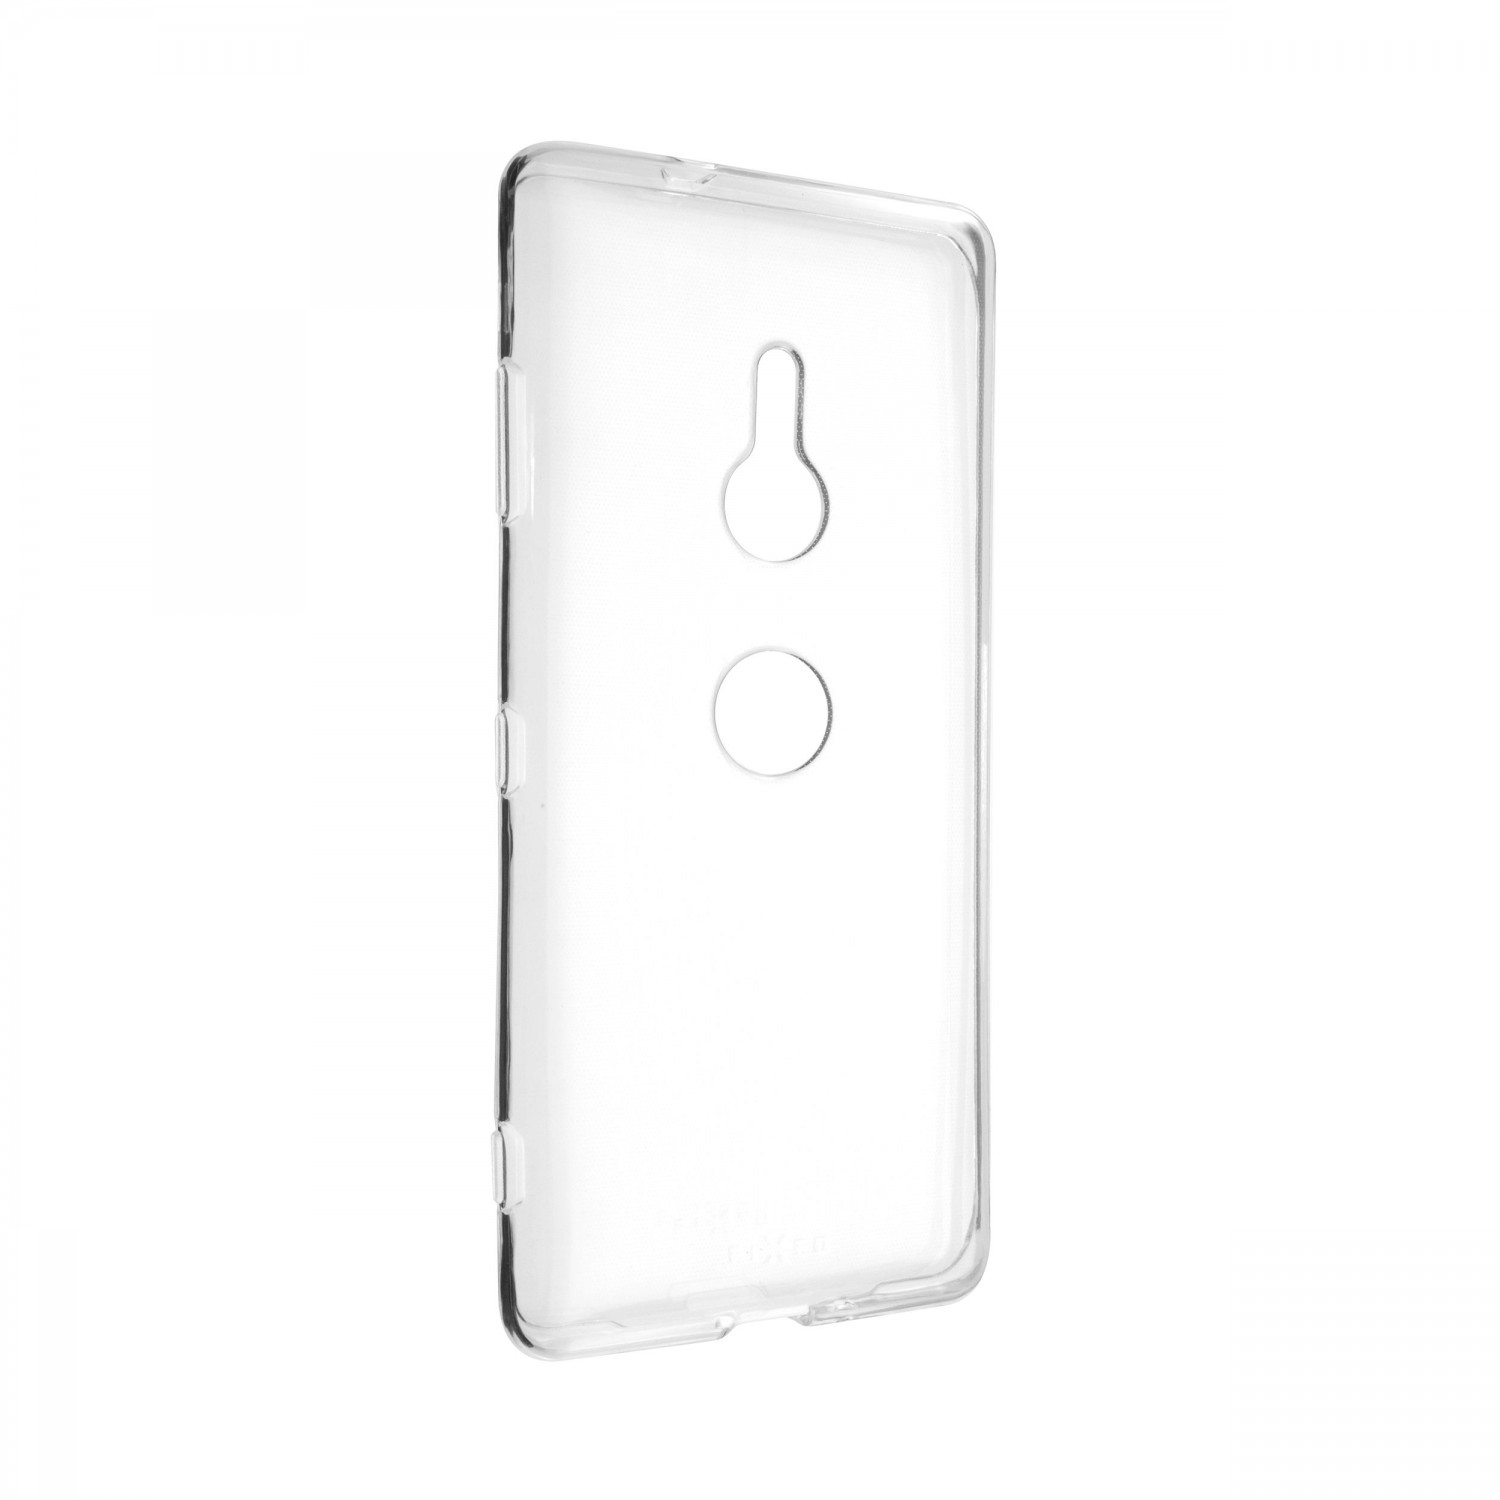 Ultratenké silikonové pouzdro FIXED Skin pro Sony Xperia XZ3, transparentní